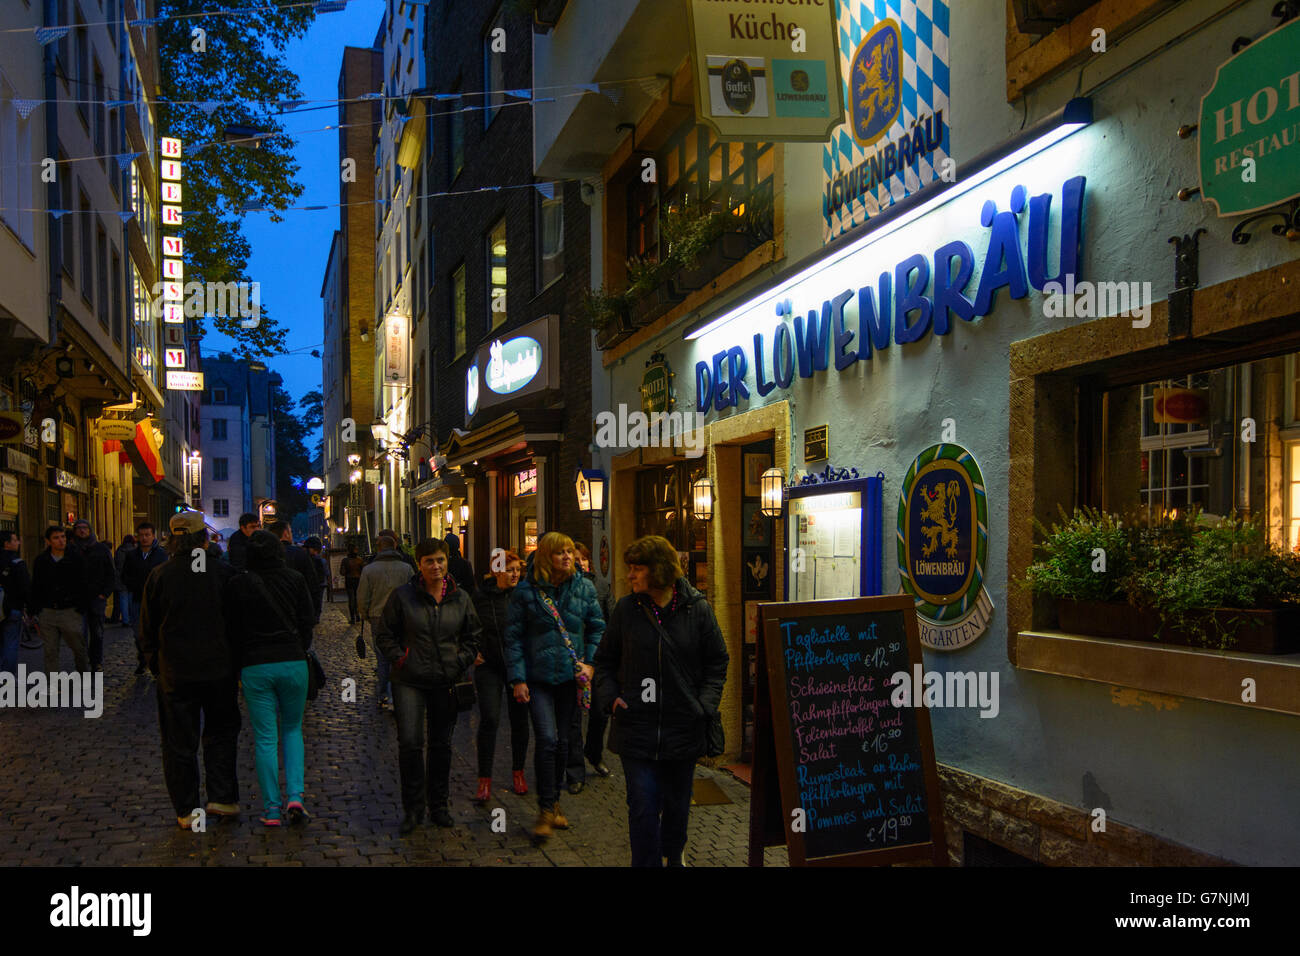 Altstadt mit Bars, K?ln, K?ln, Nordrhein-Westfalen, Nordrhein-Westfalen  Stockfotografie - Alamy